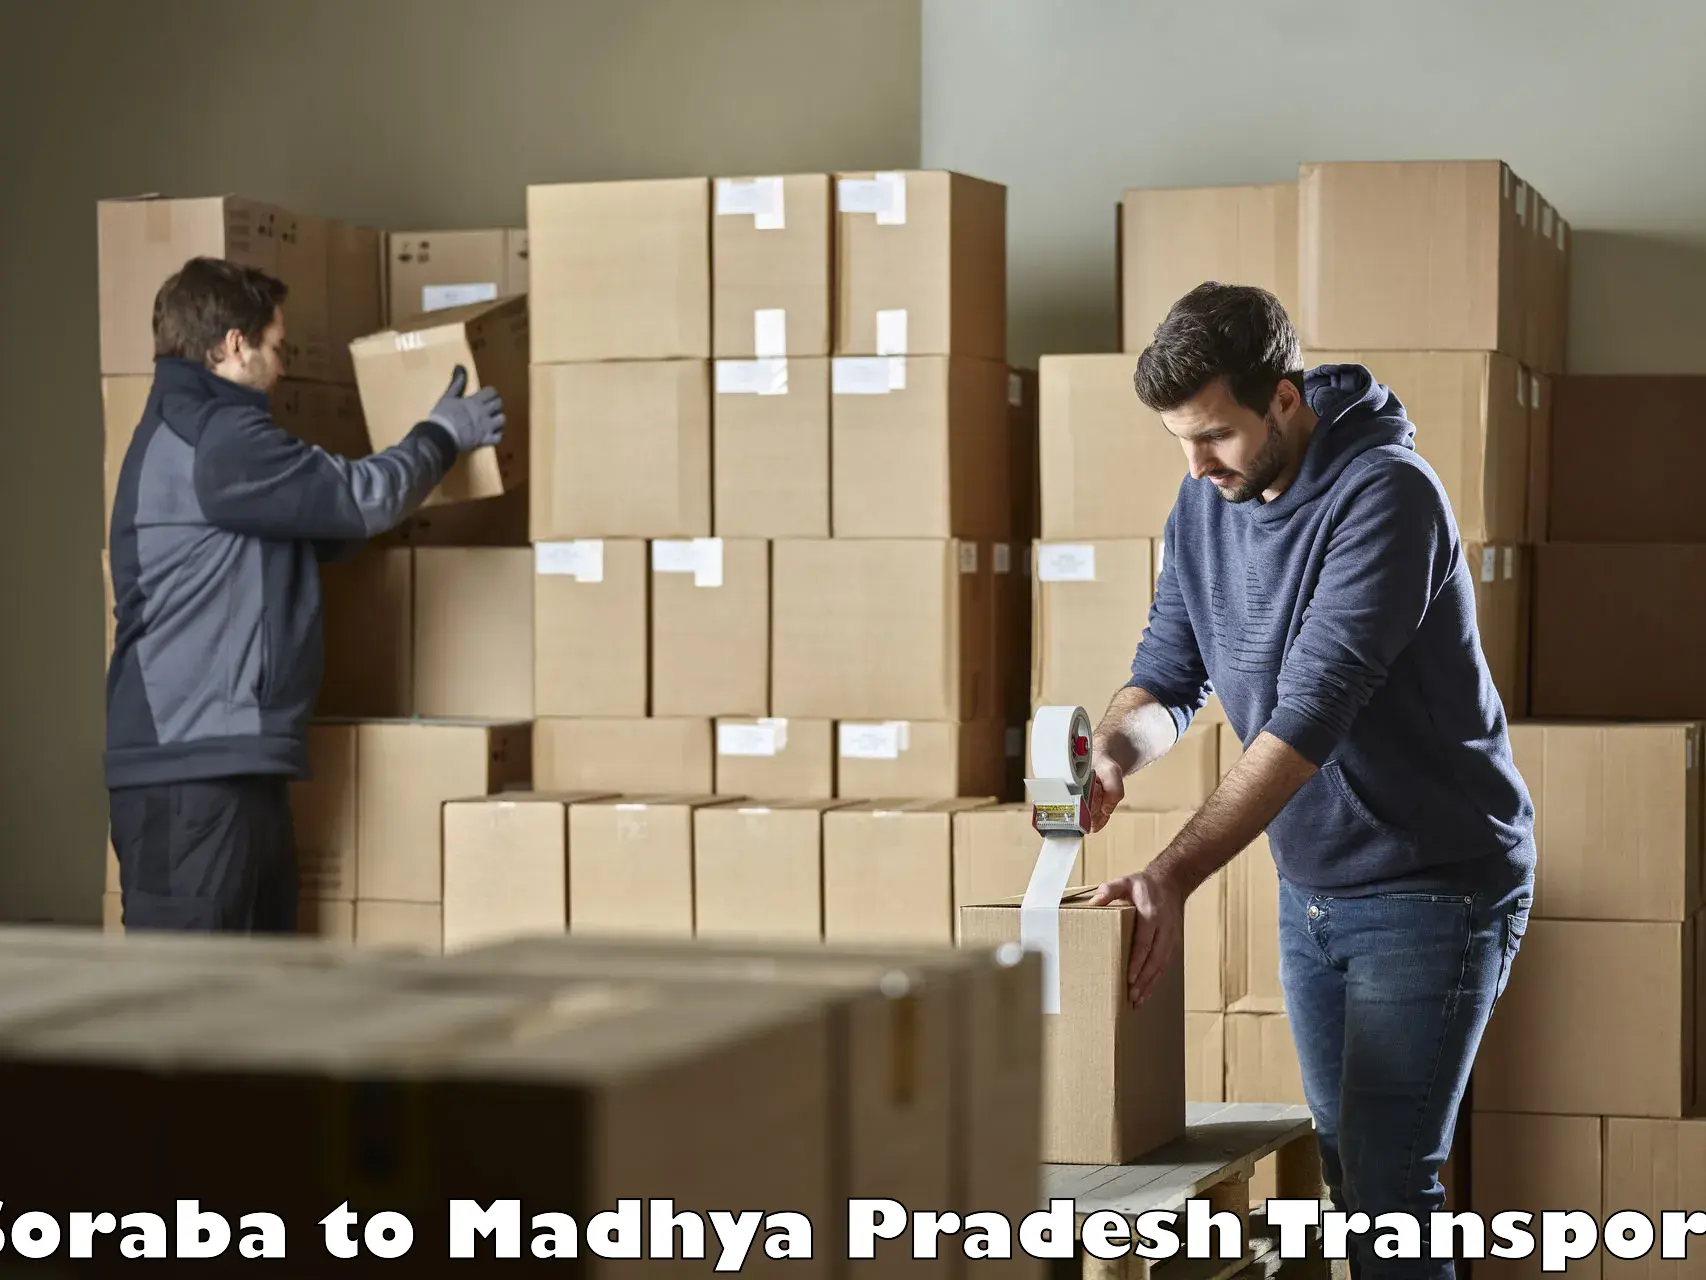 Furniture transport service Soraba to Pithampur